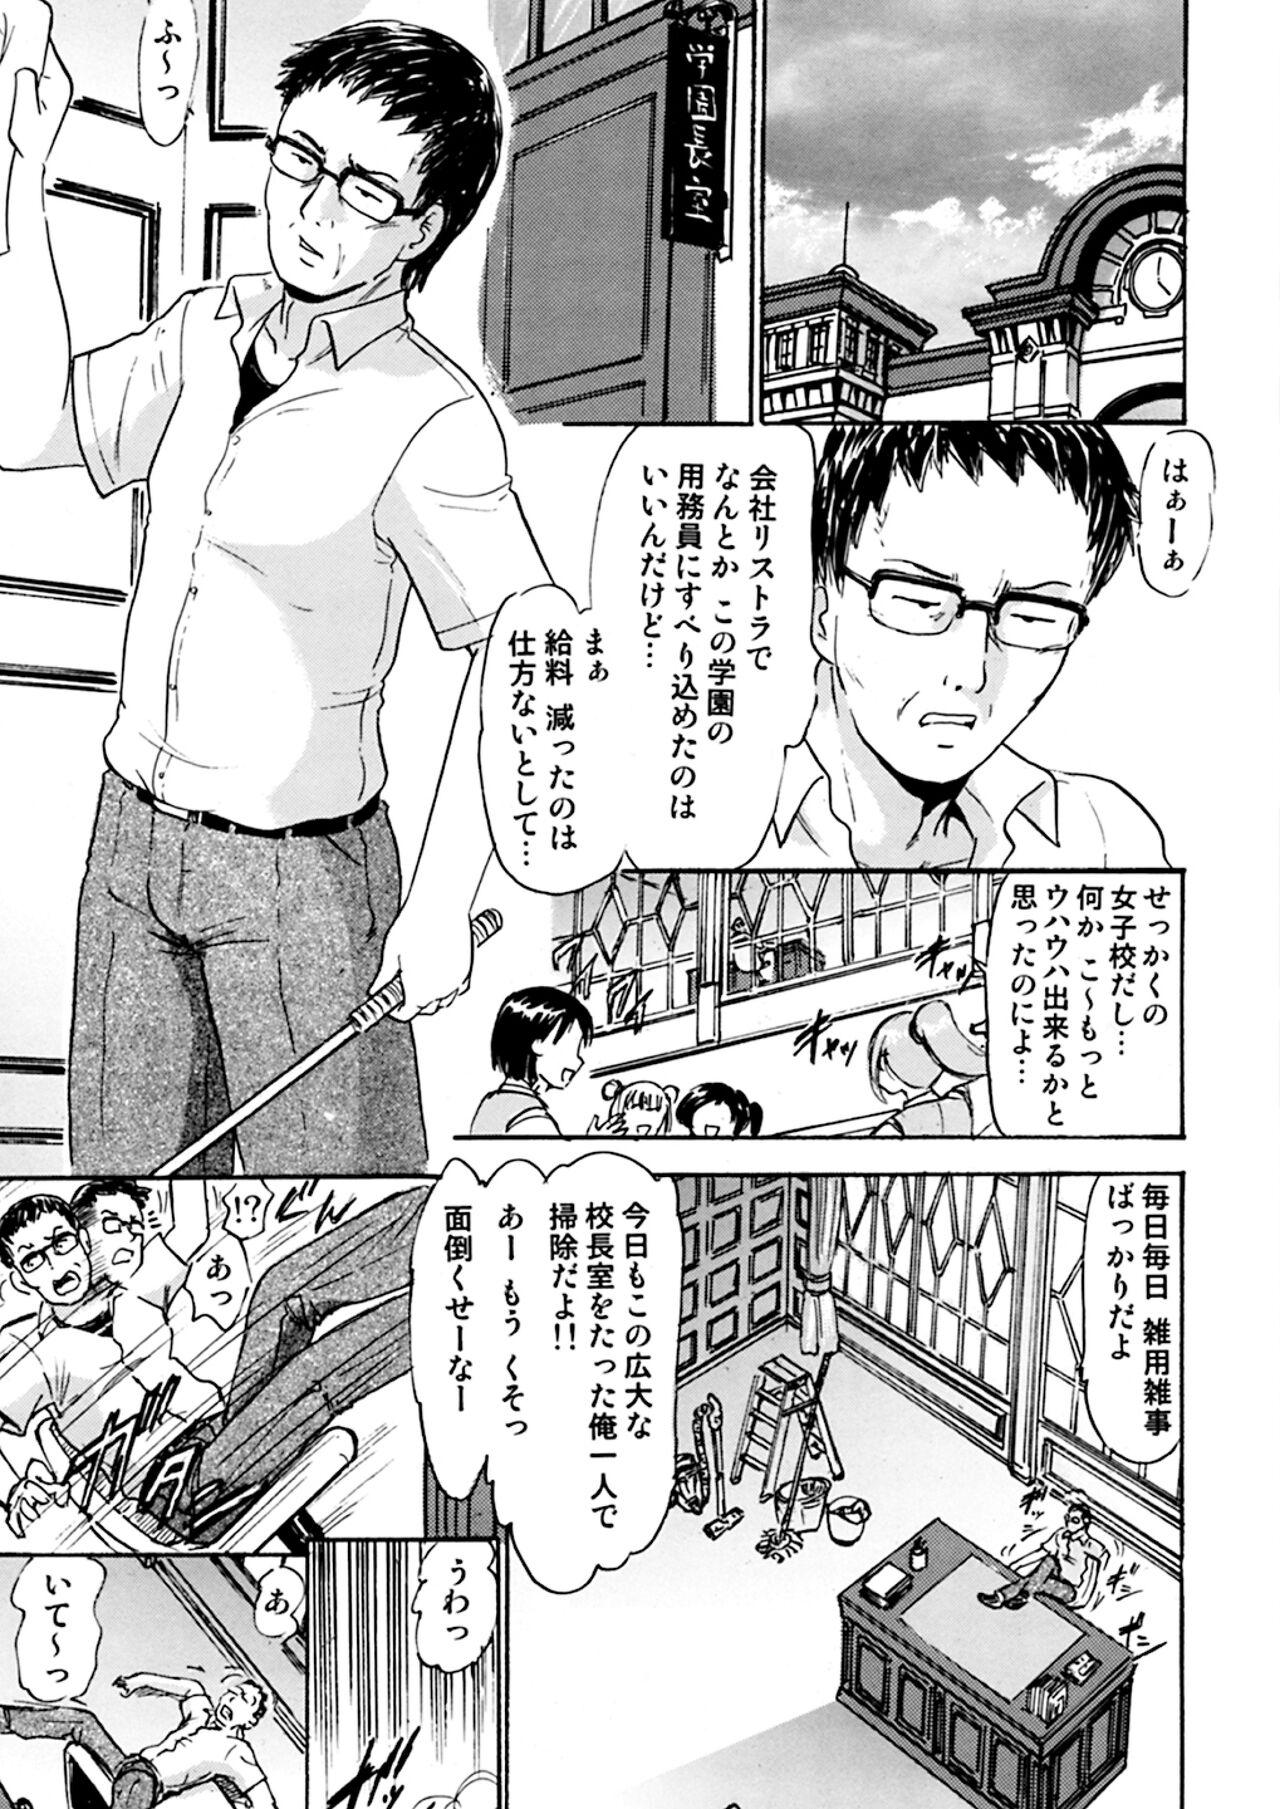 Sub Kugutsu no Eva-tan - Mahou sensei negima Shesafreak - Page 2